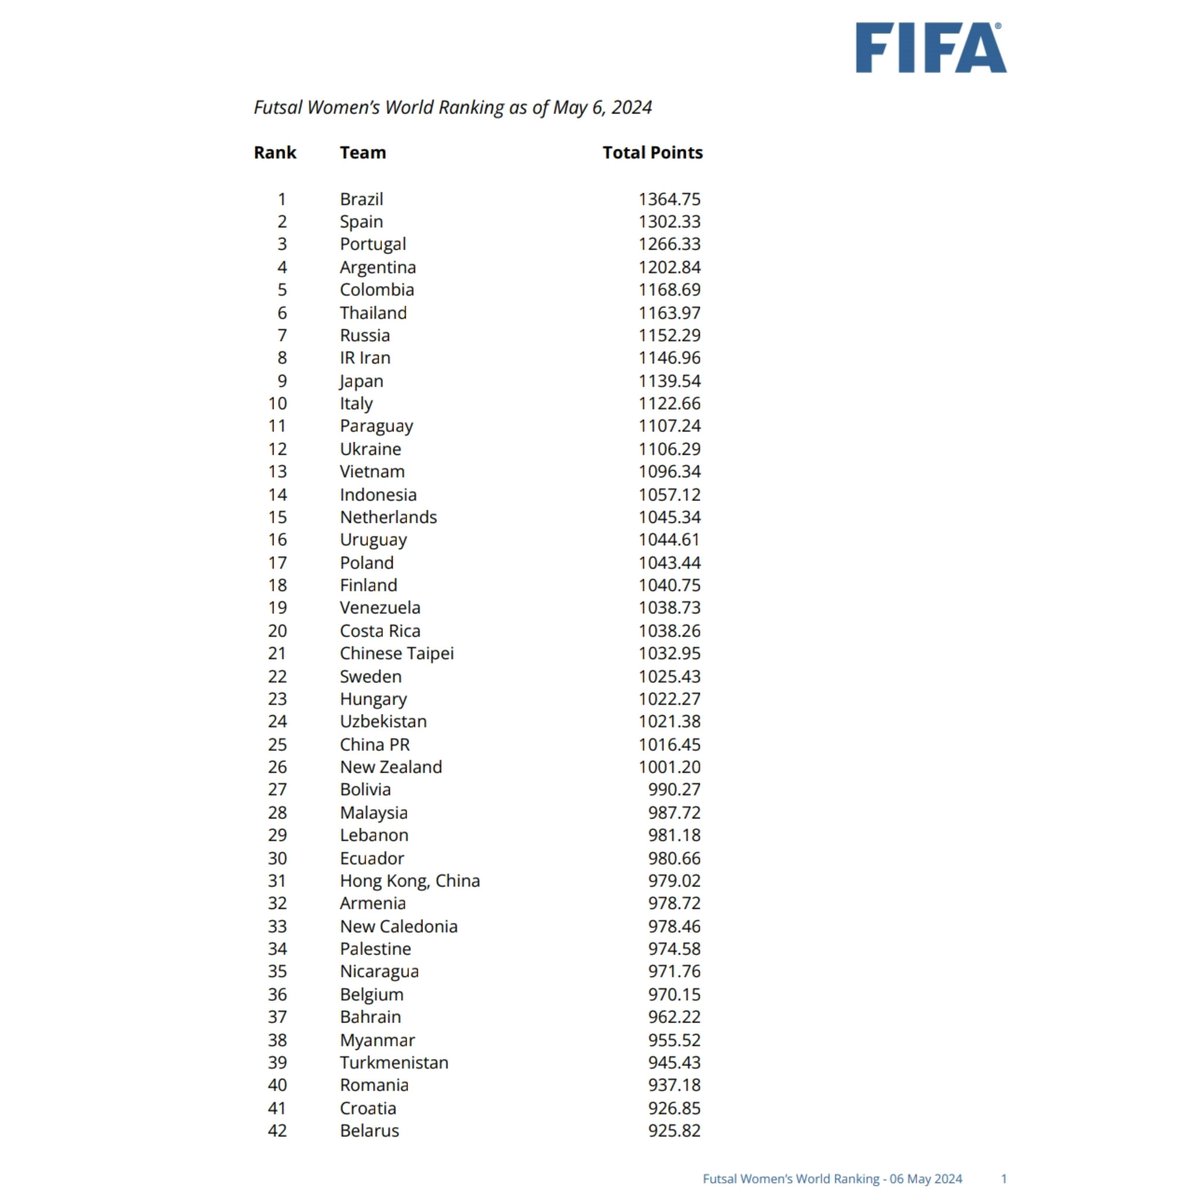 FIFA telah merilis ranking Futsal secara resmi

Indonesia menempati peringkat 28 dunia dari 169 negara untuk Putra & peringkat 14 dunia dari 69 negara untuk Putri

#FIFAFutsalWorldRanking #Futsal #TimnasFutsal #TimnasIndonesia #KitaGaruda #OlahragaIndonesia